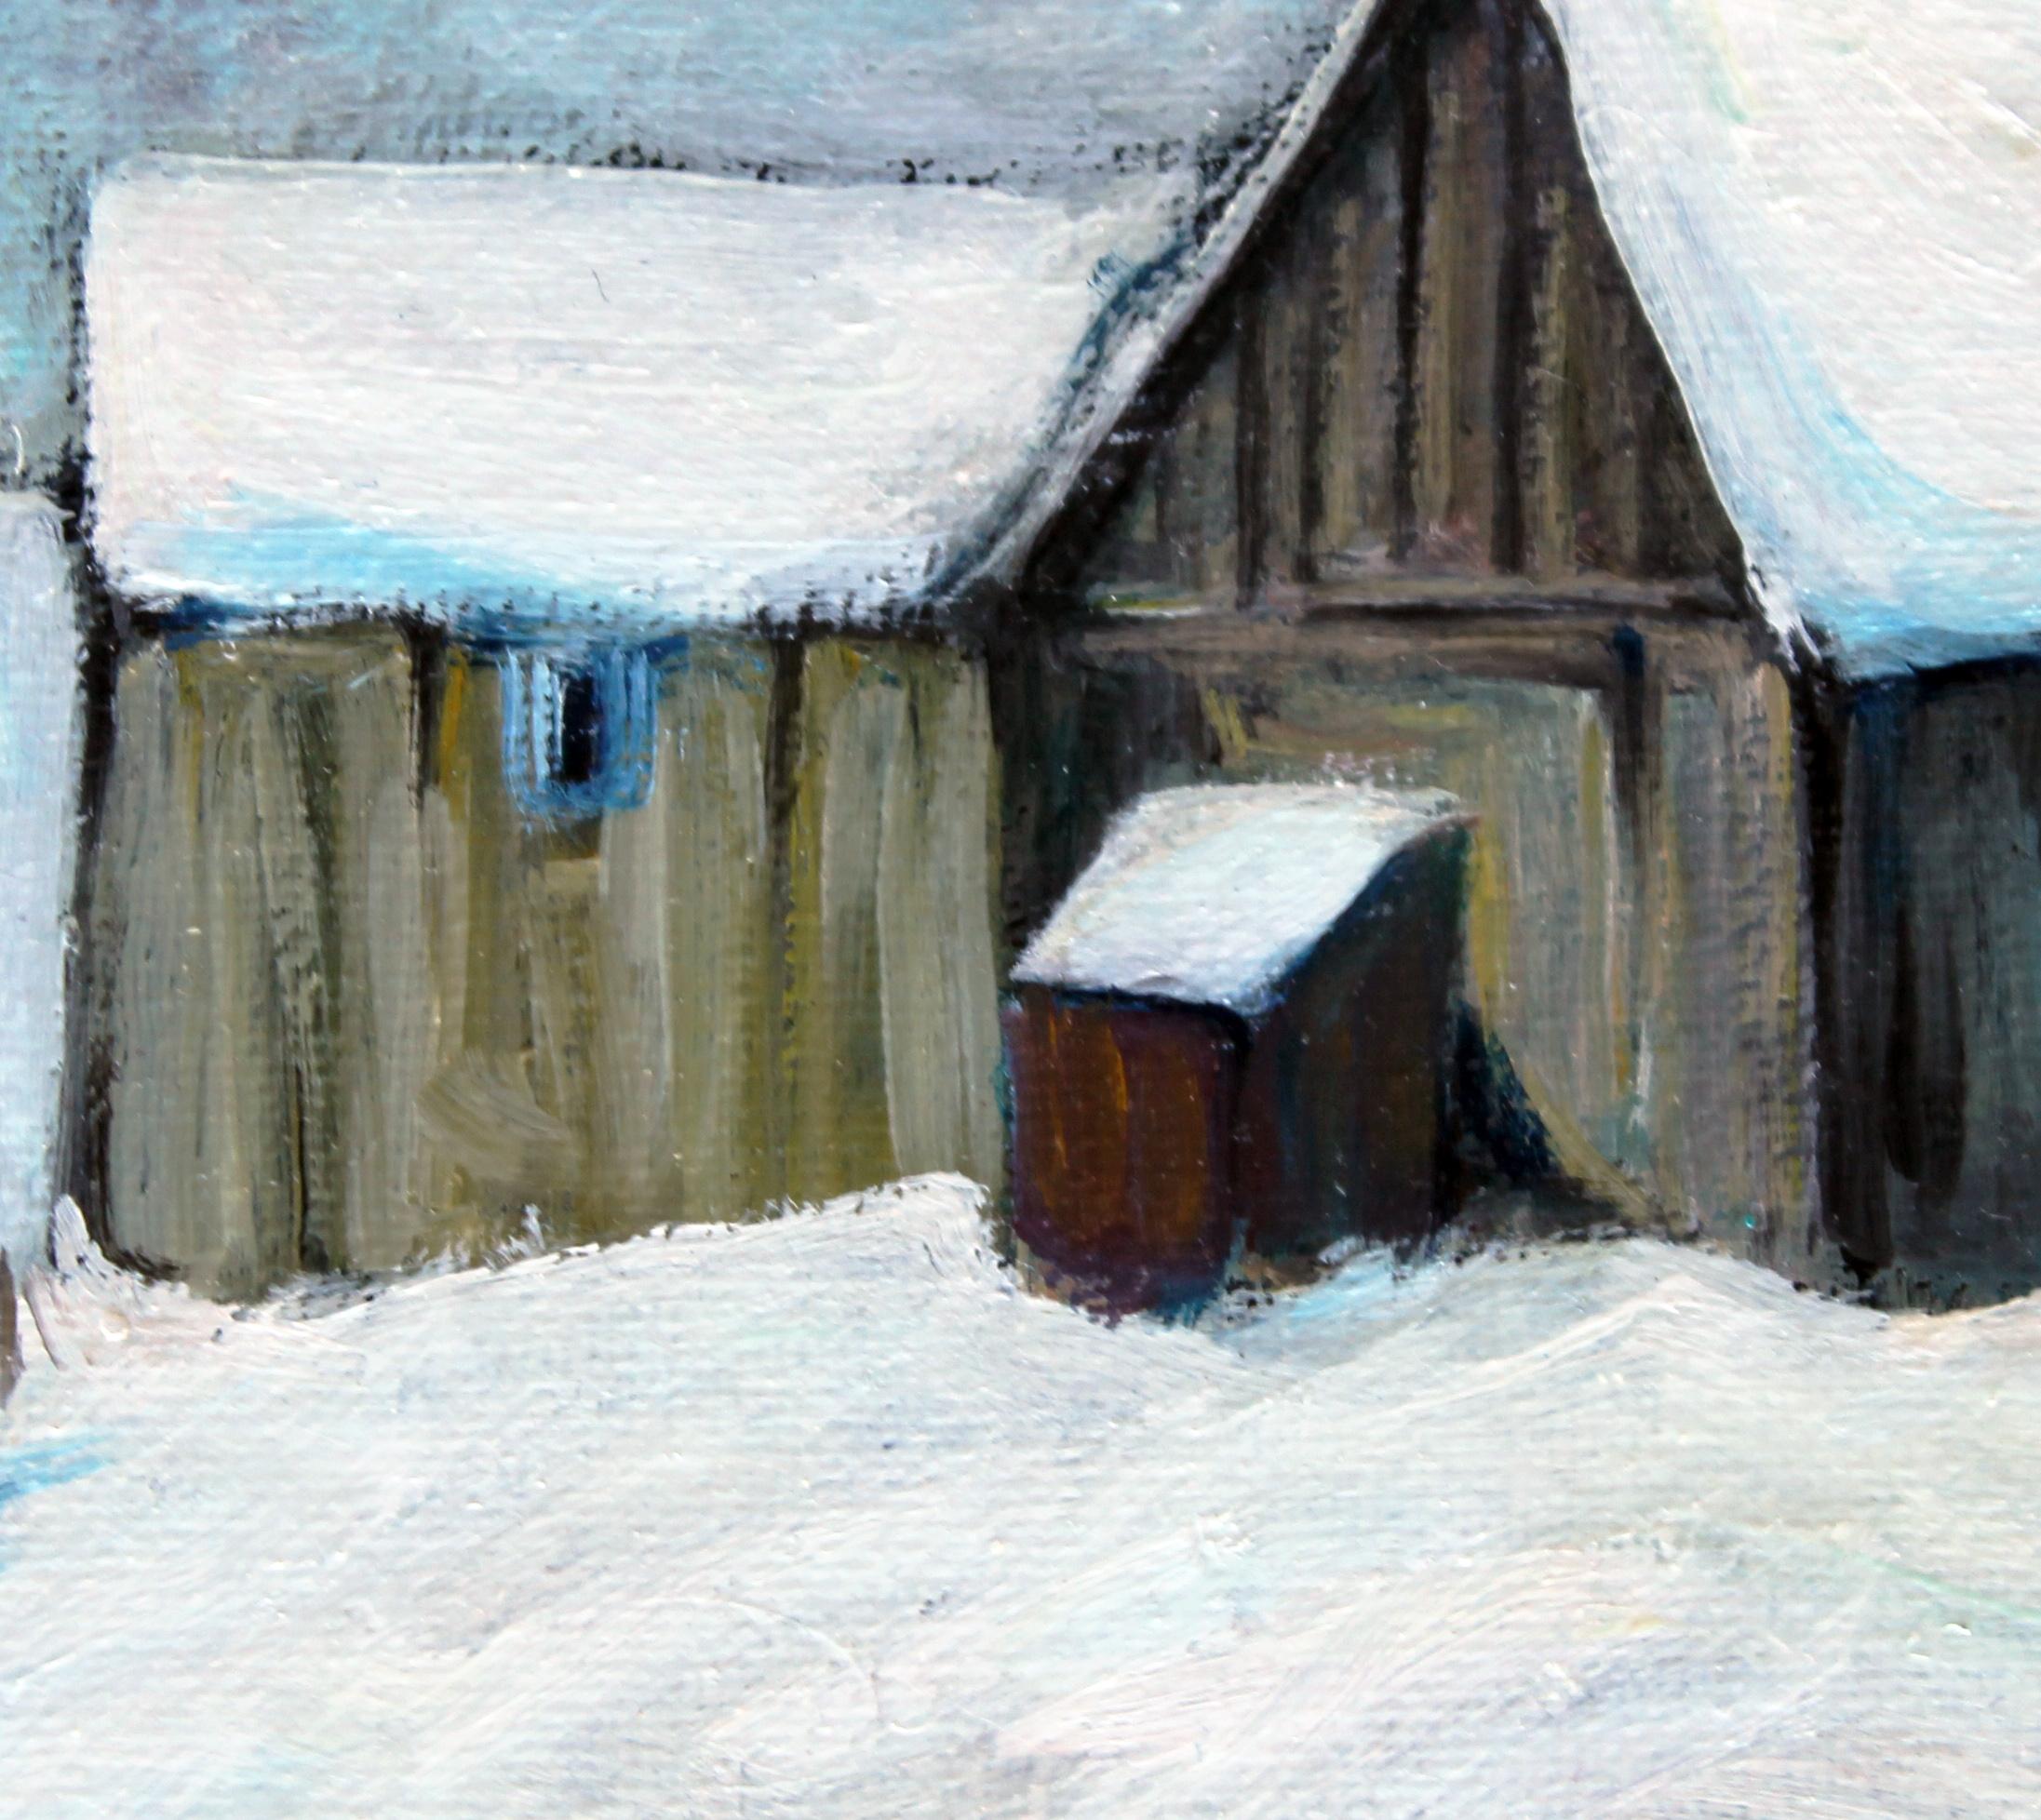 snowbound dwelling in winter